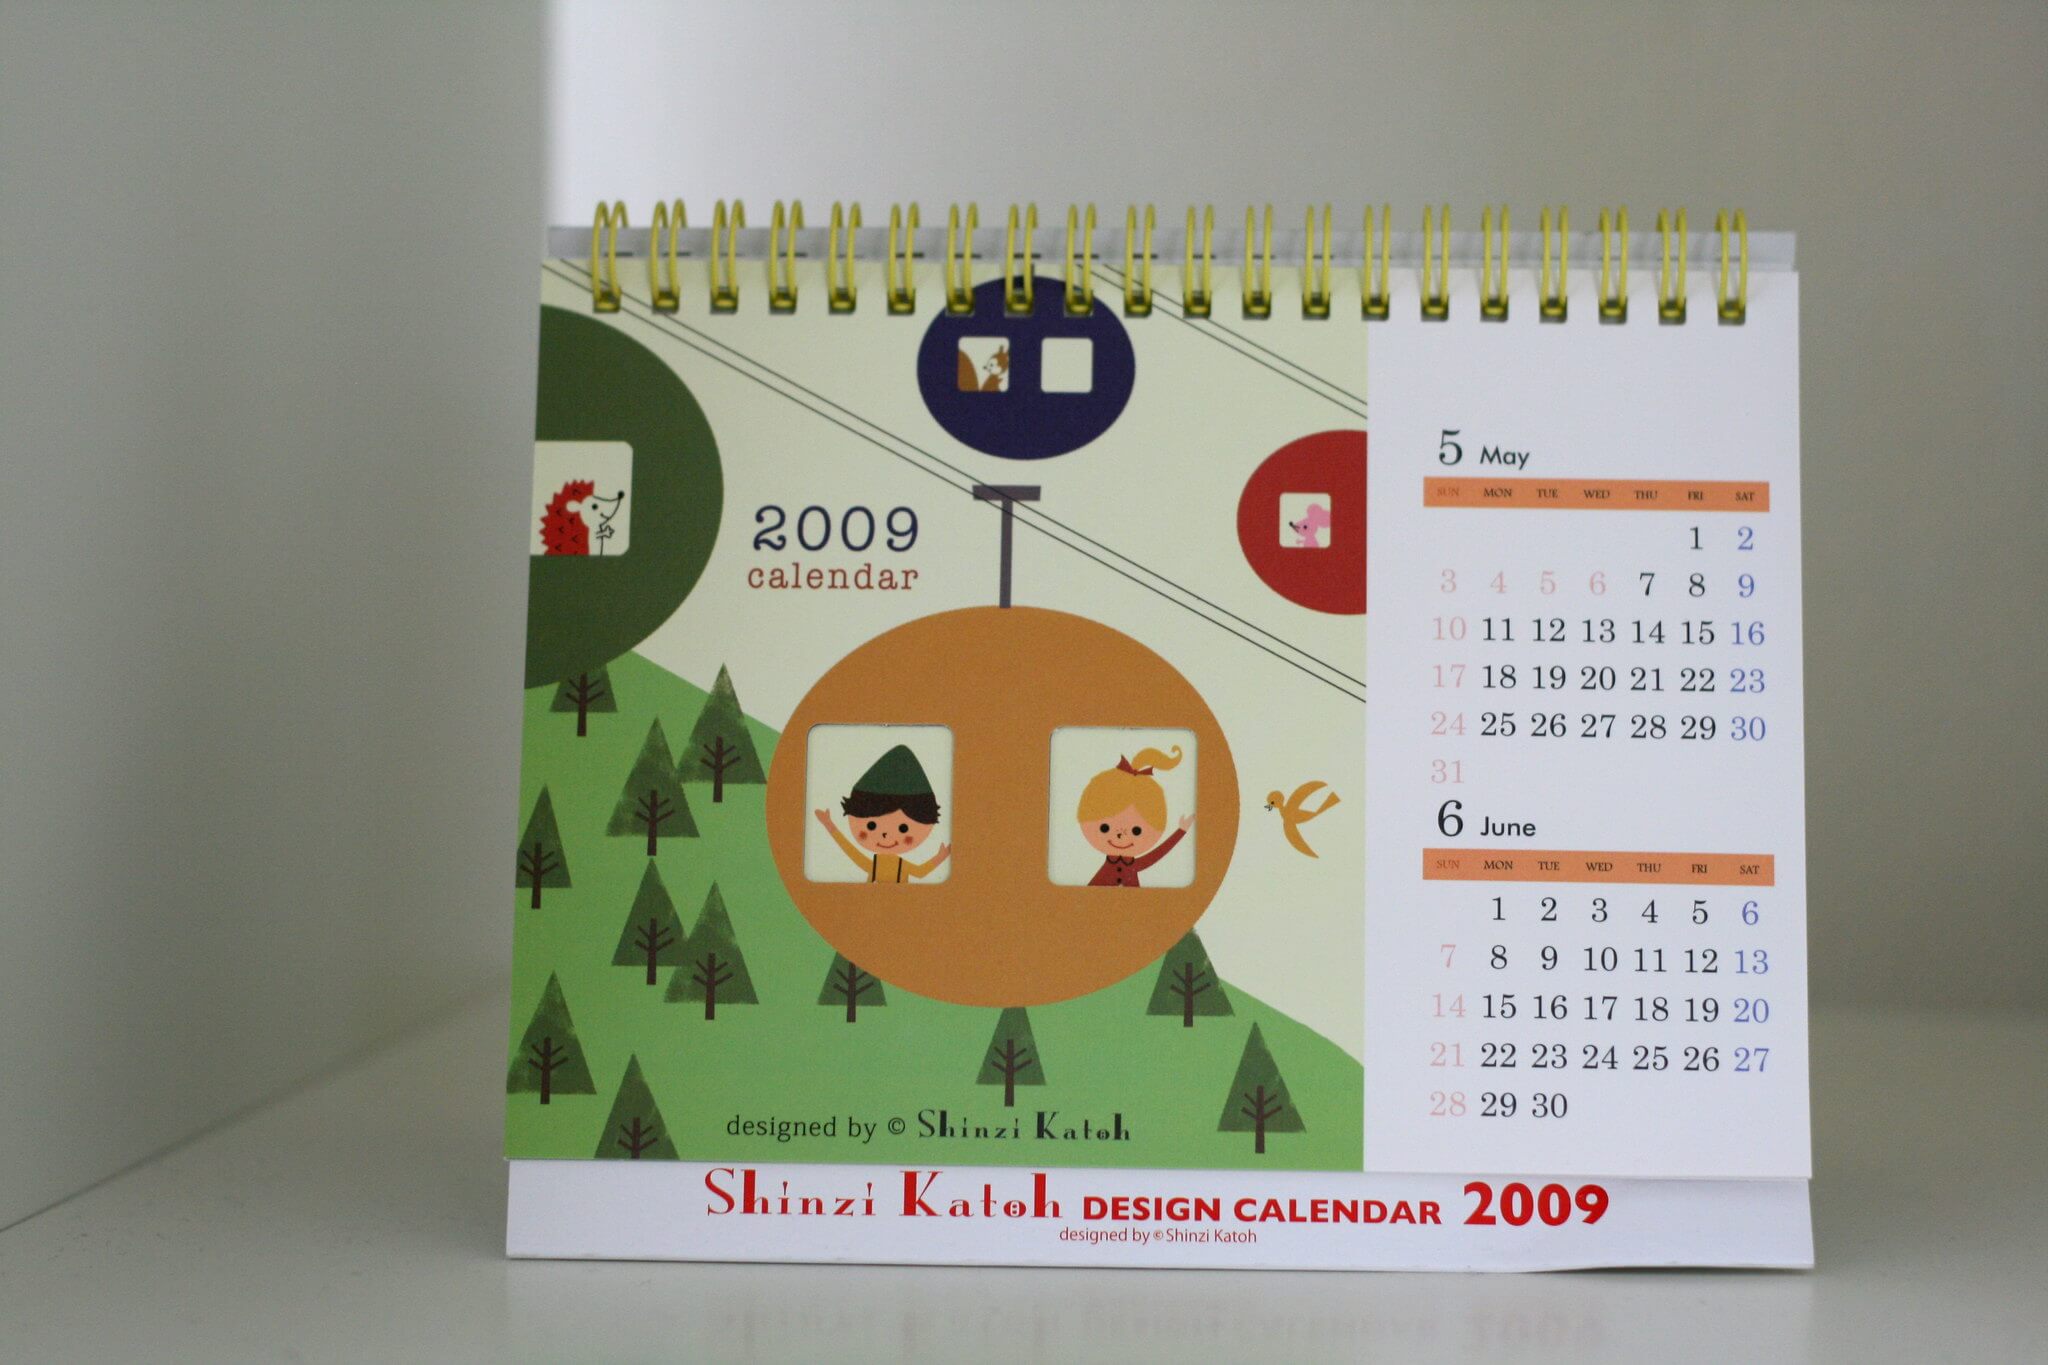 Japanischer Kalender nach westlichem Vorbild